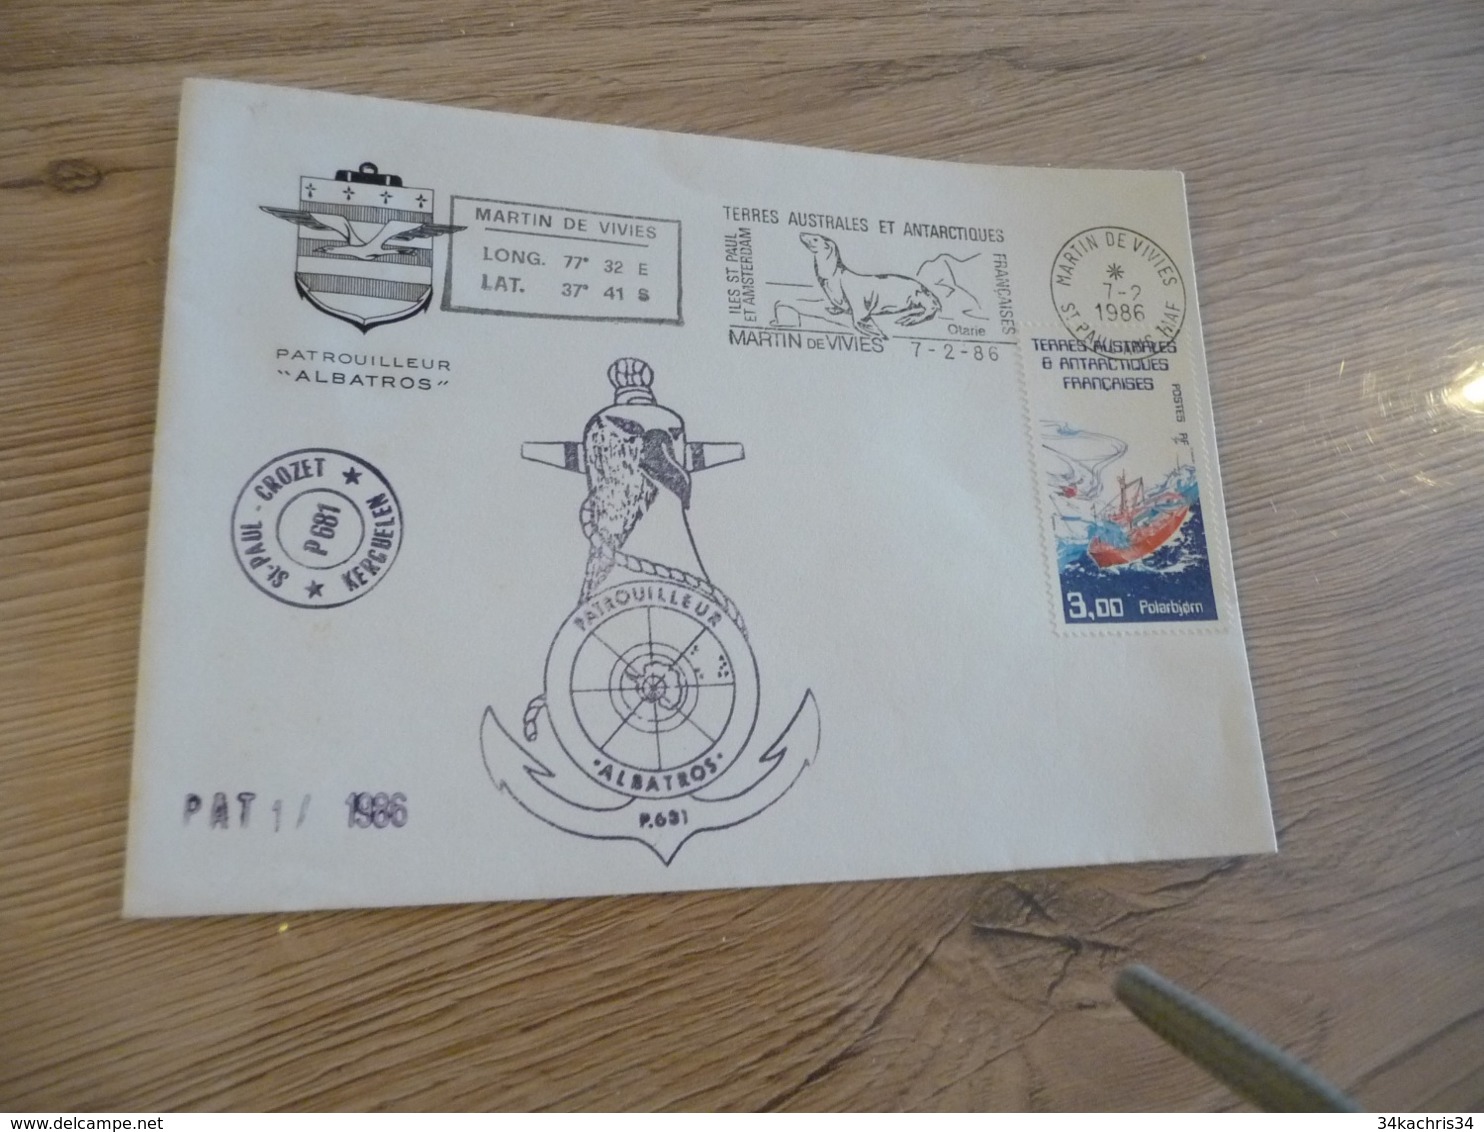 Lettre TAAF Saint Paul Crozet Patrouilleur Albatros  1986 Autographes - Briefe U. Dokumente